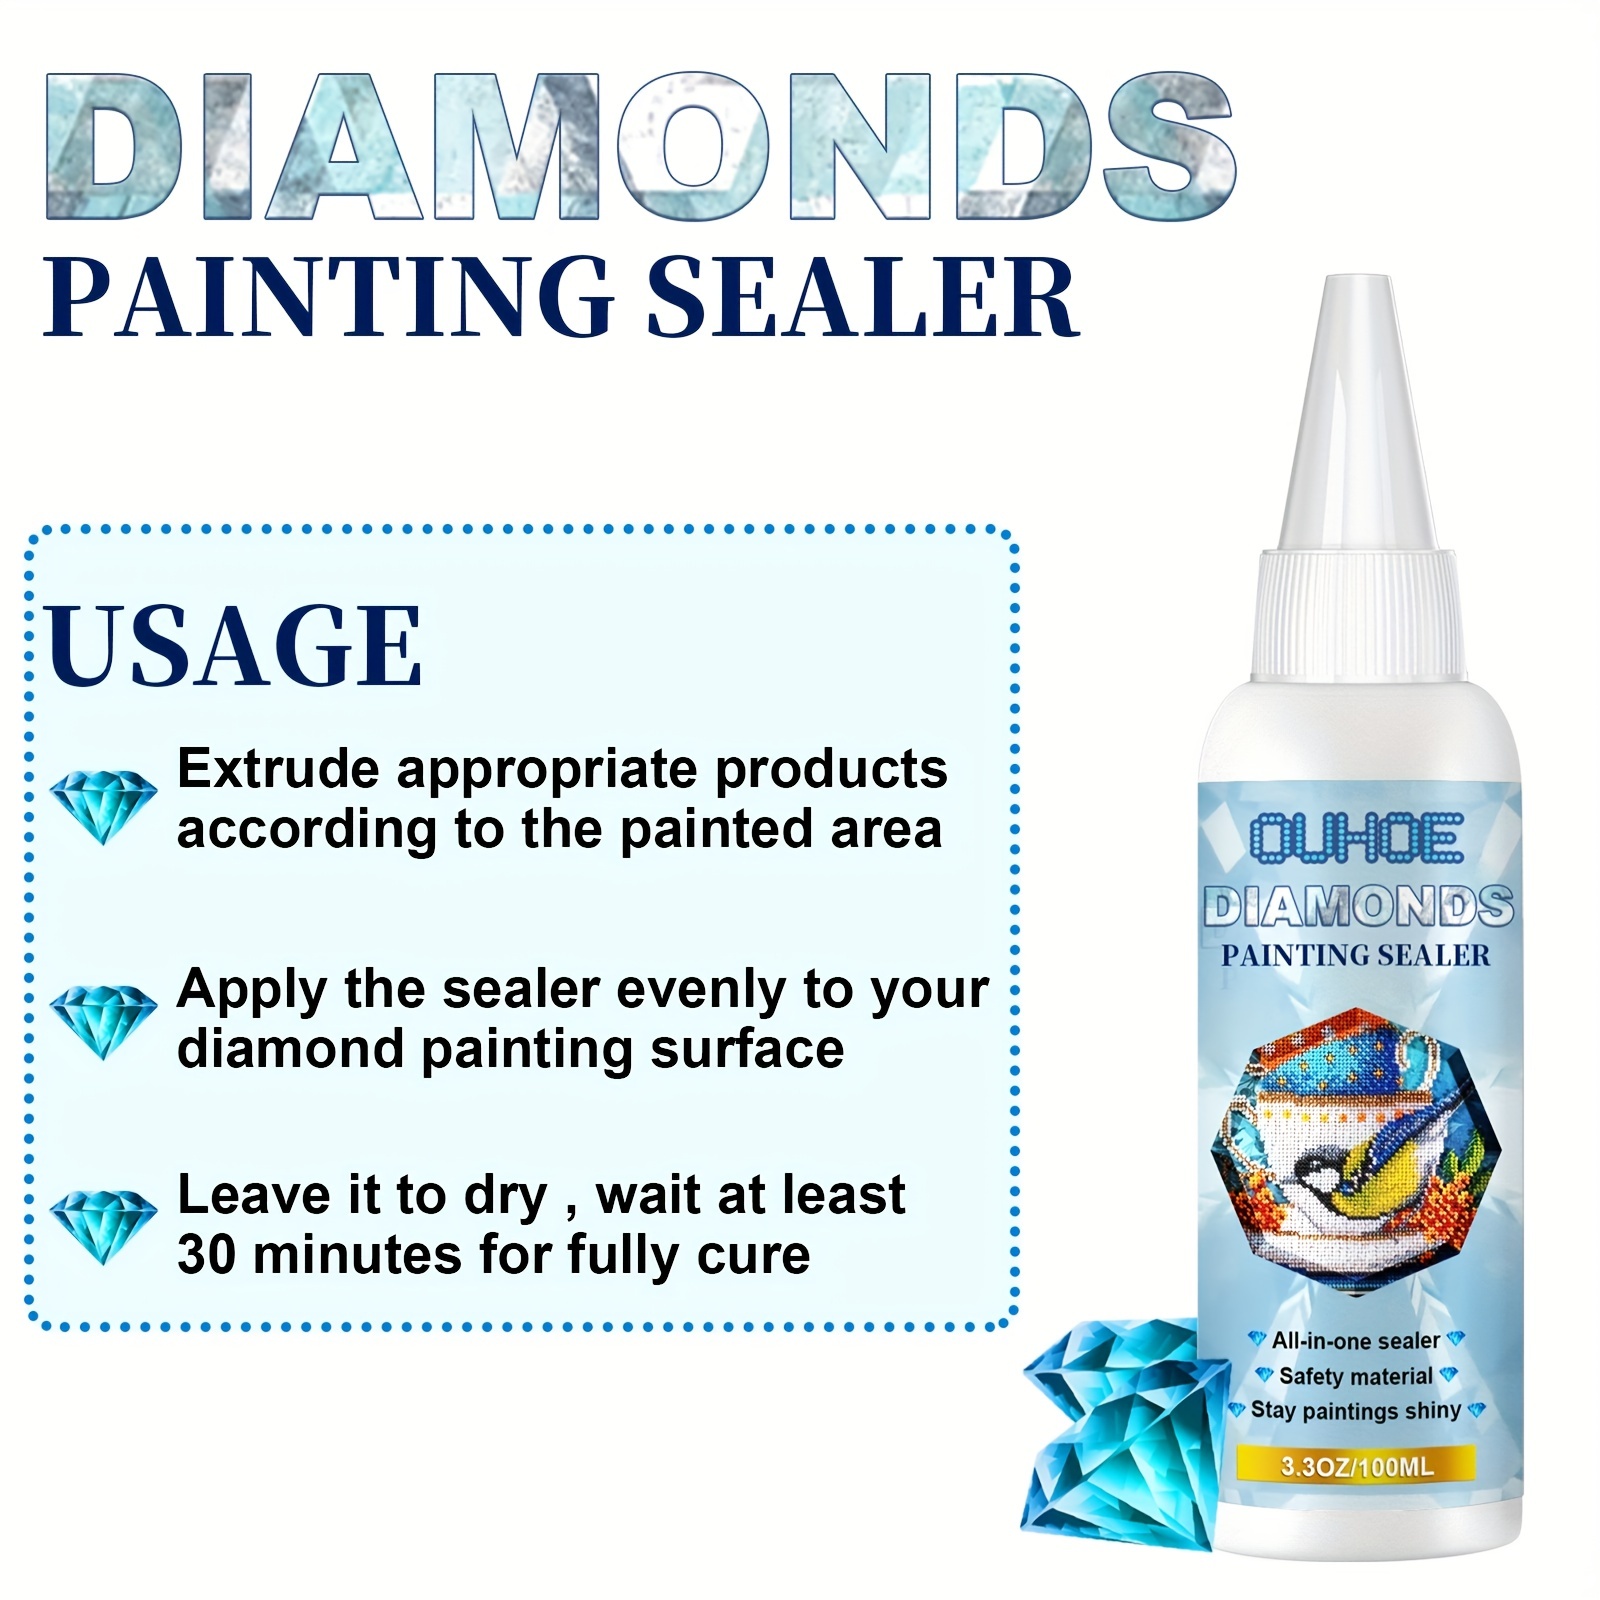 DIY Diamond Painting Sealant Glue Brightening Liquid Diamond Painting  Mosaic Tool Kit